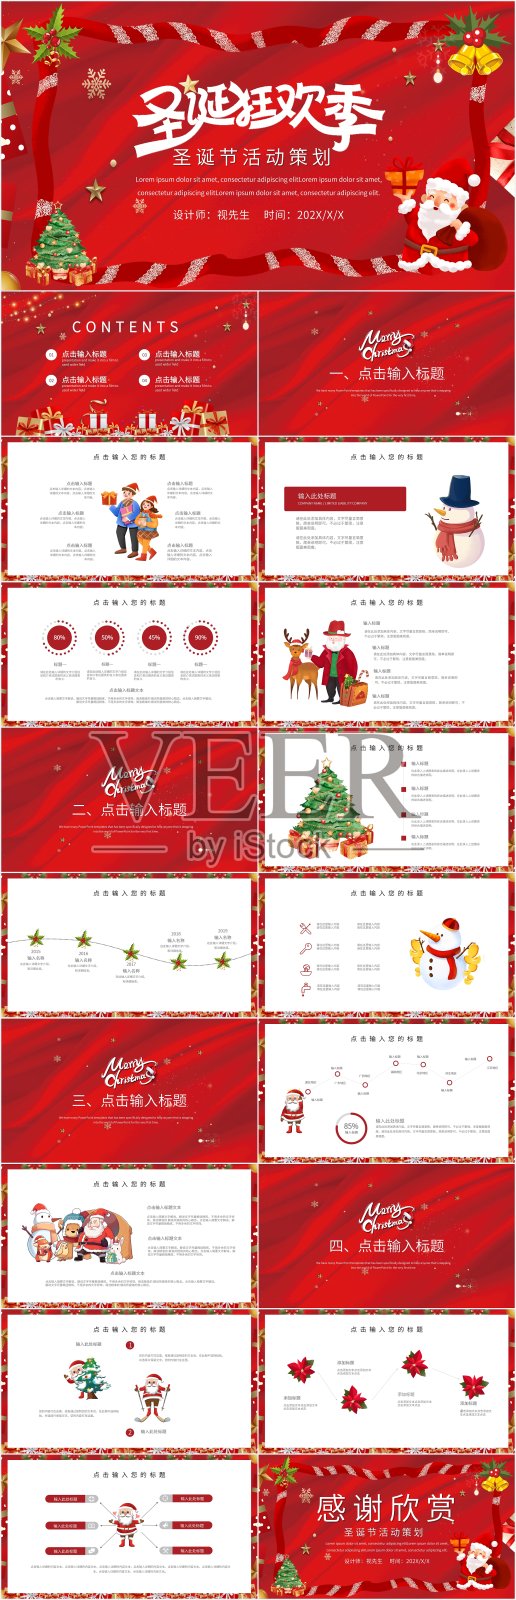 红色简约风圣诞节活动策划PPT模板设计模板素材